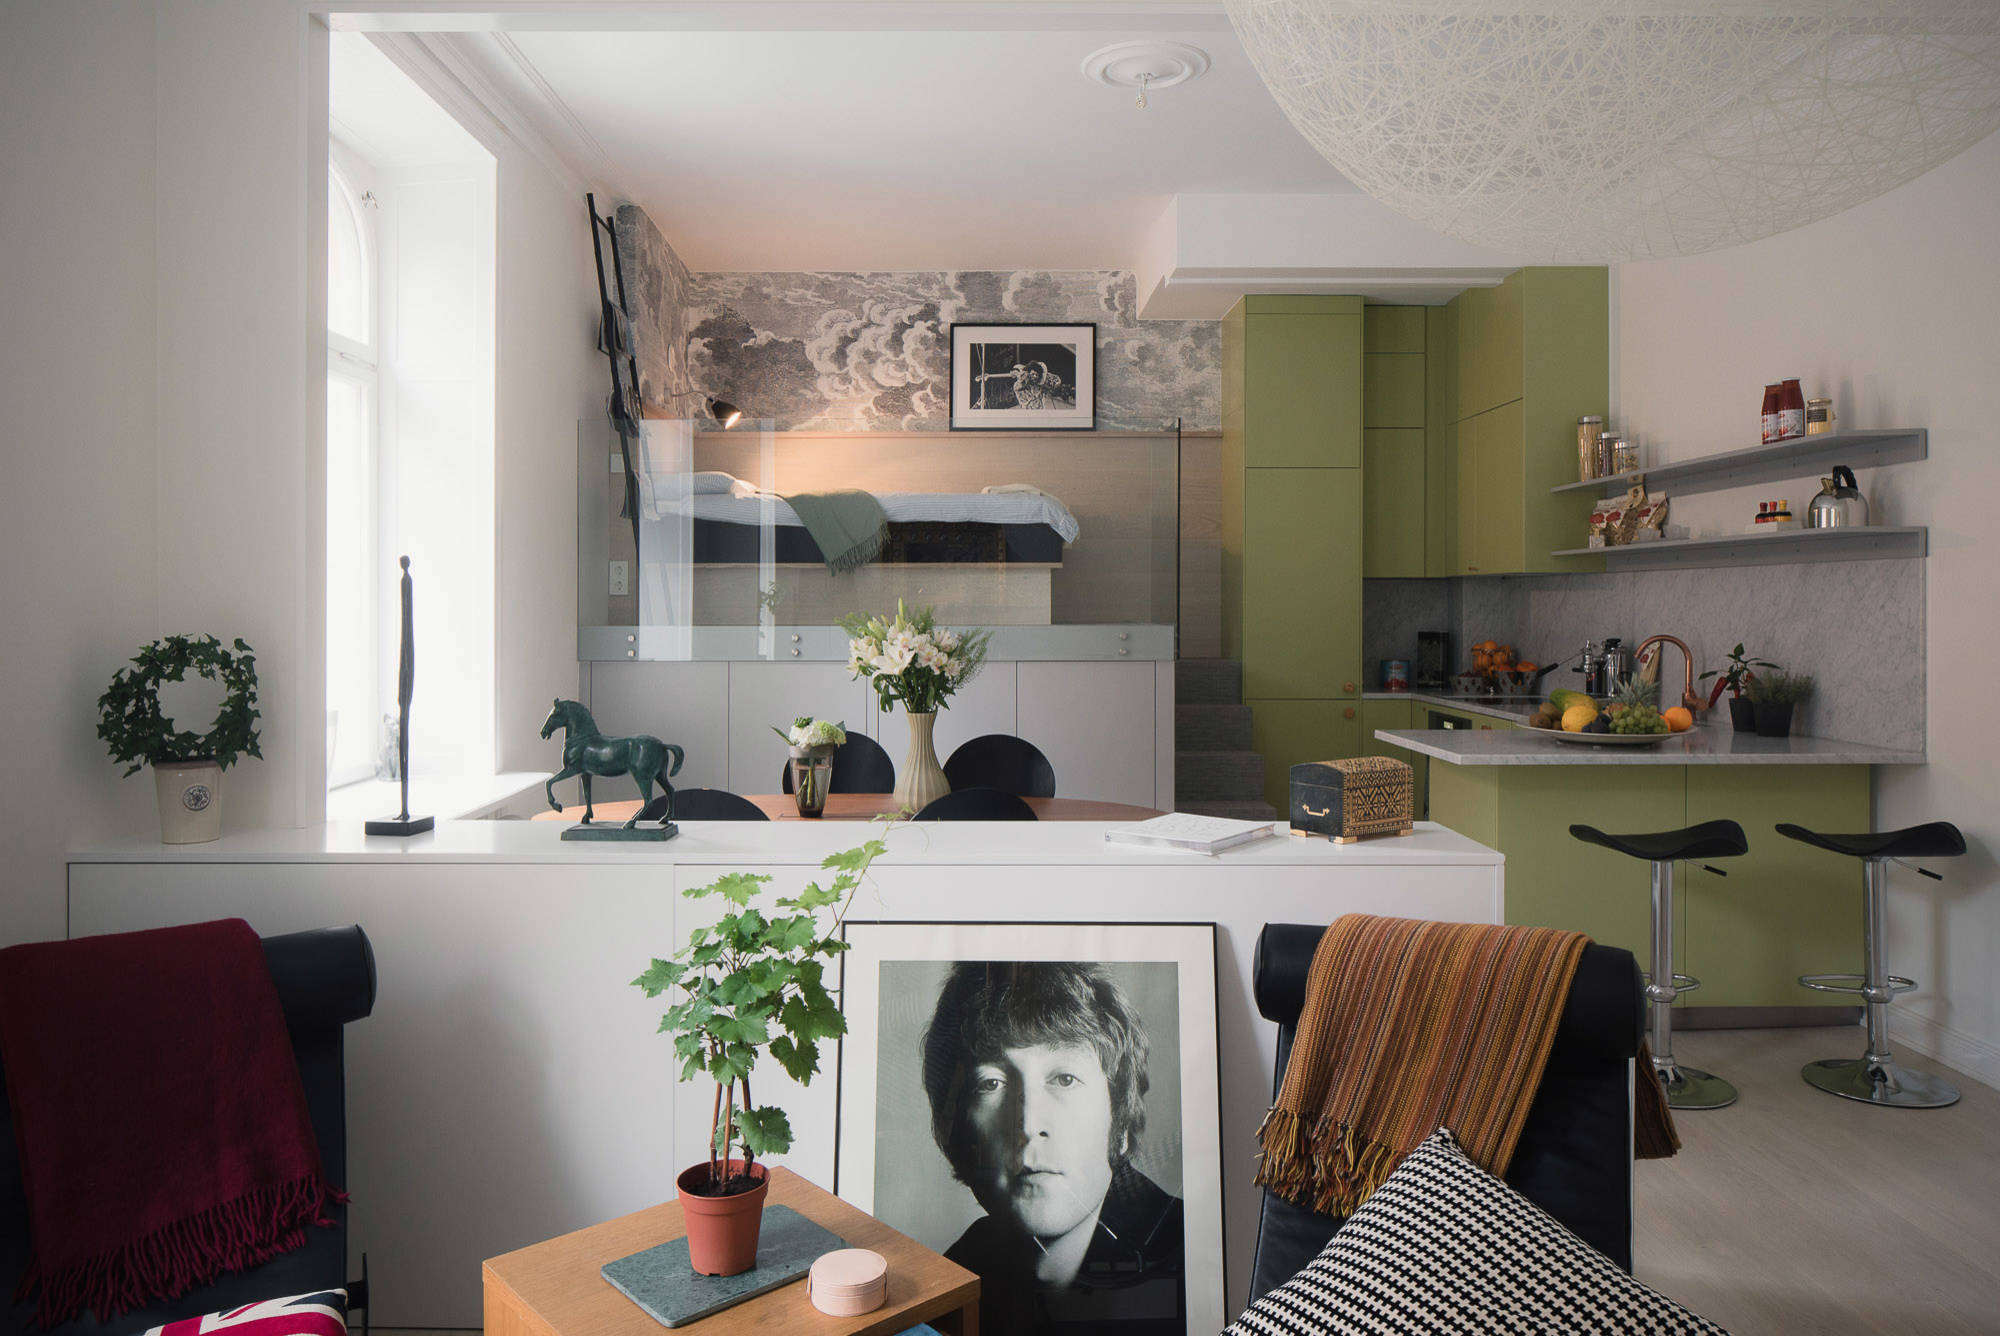 Дизайн квартиры-студии: советы по грамотному оформлению интерьера и планировке пространства